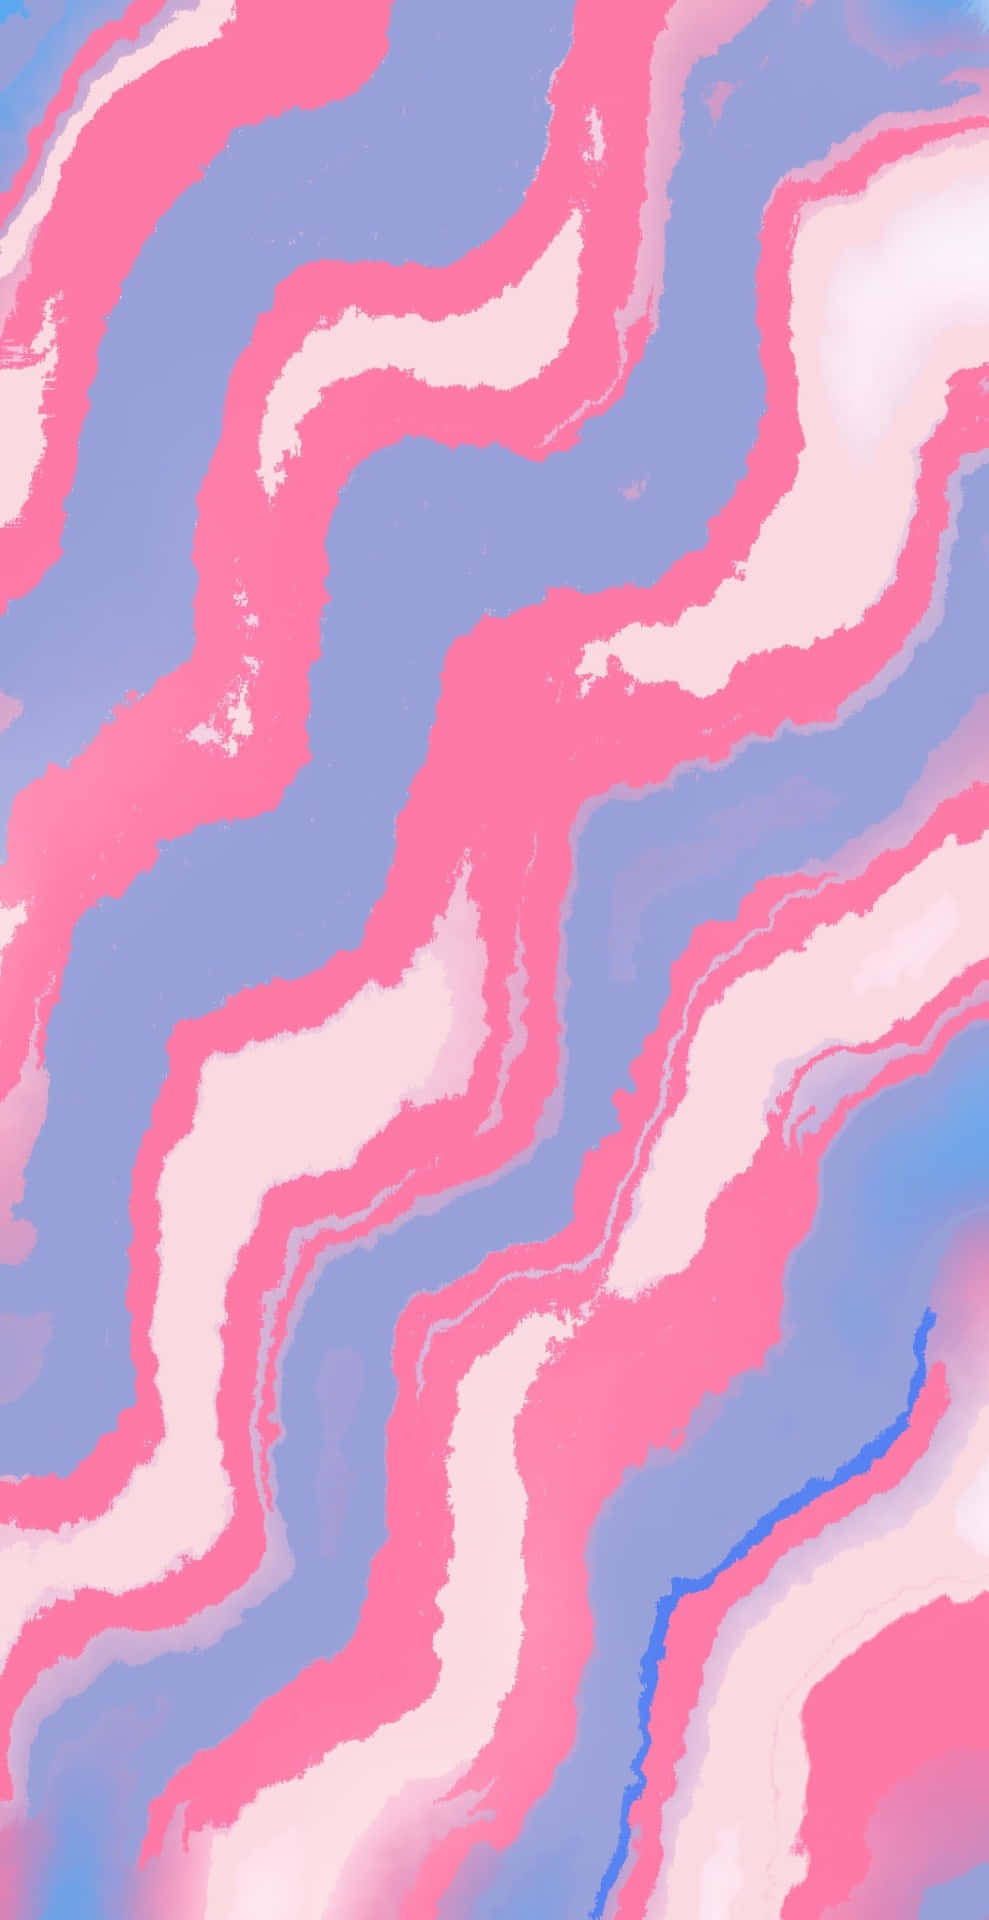 Einabstraktes Hintergrundbild In Rosa Und Blau Wallpaper